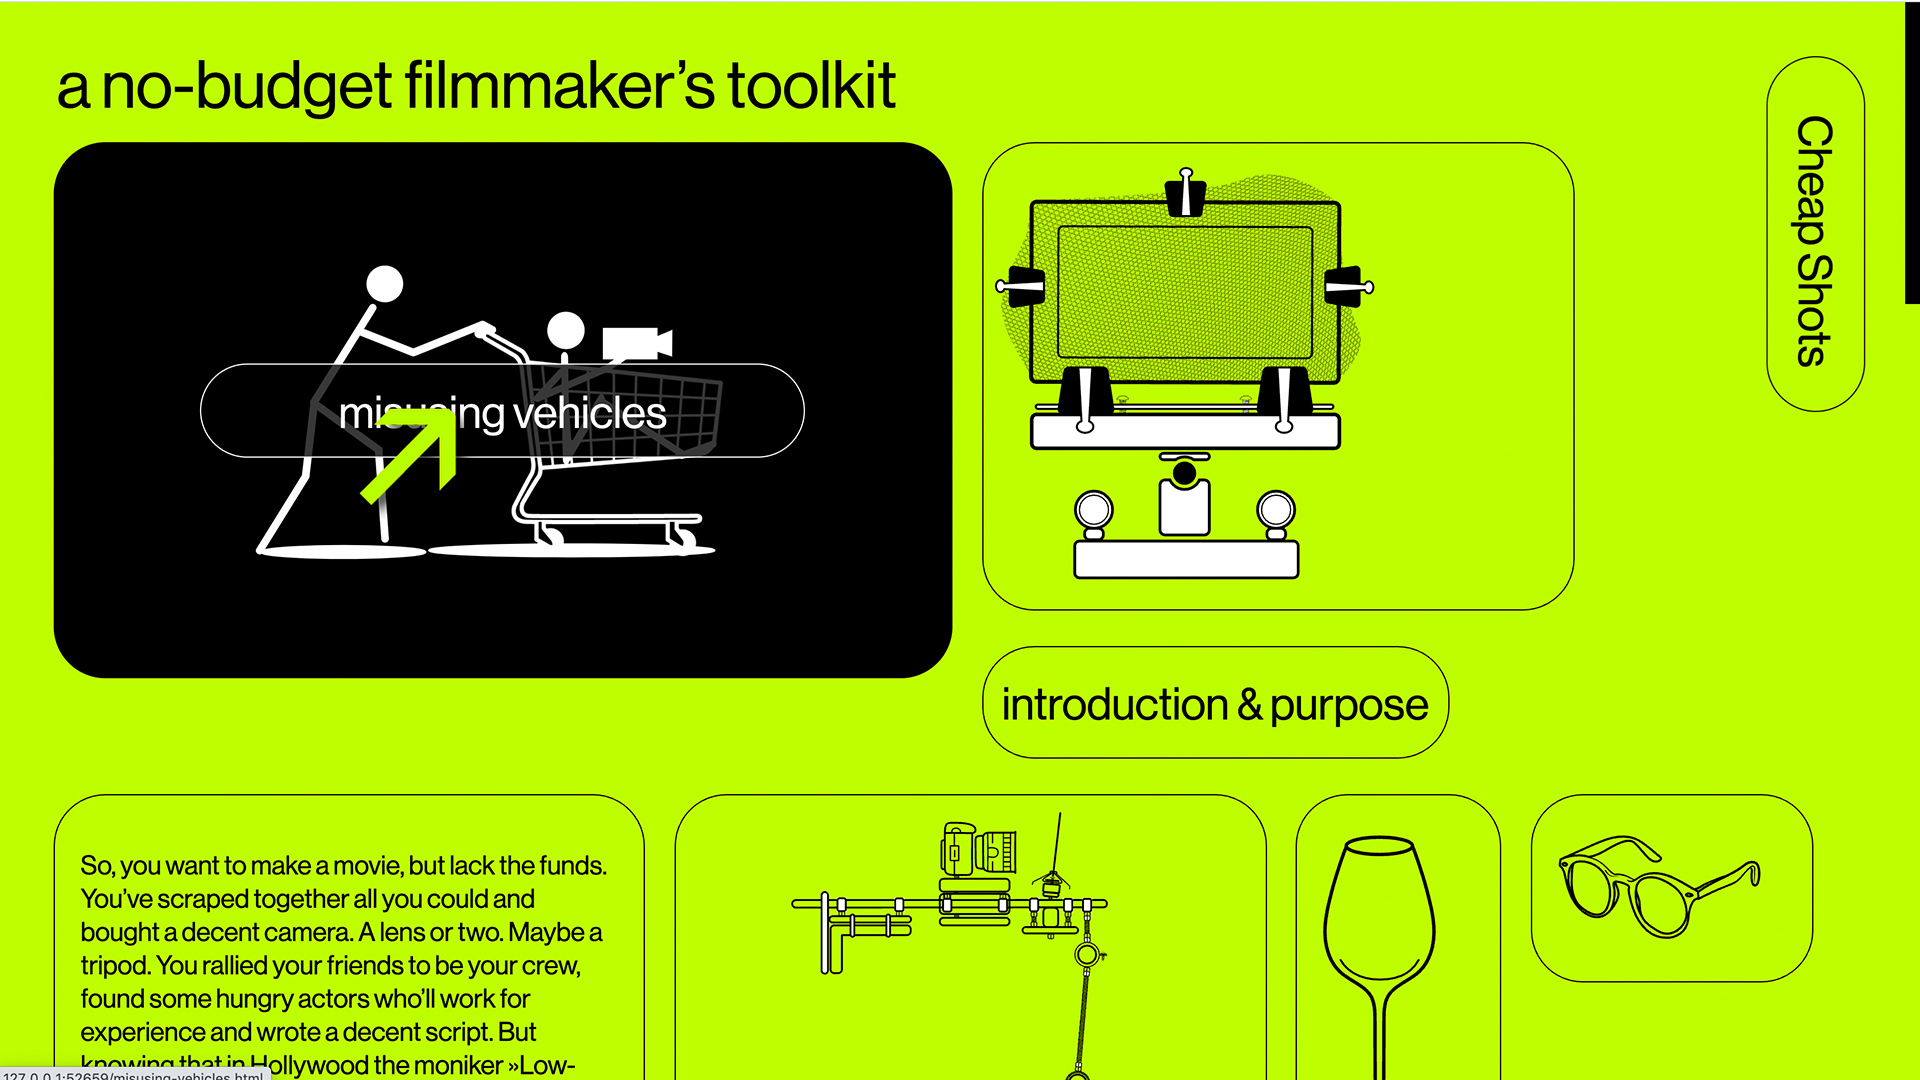 screenshot from the website cheap shots a no-budget filmmaker's manual by f-land